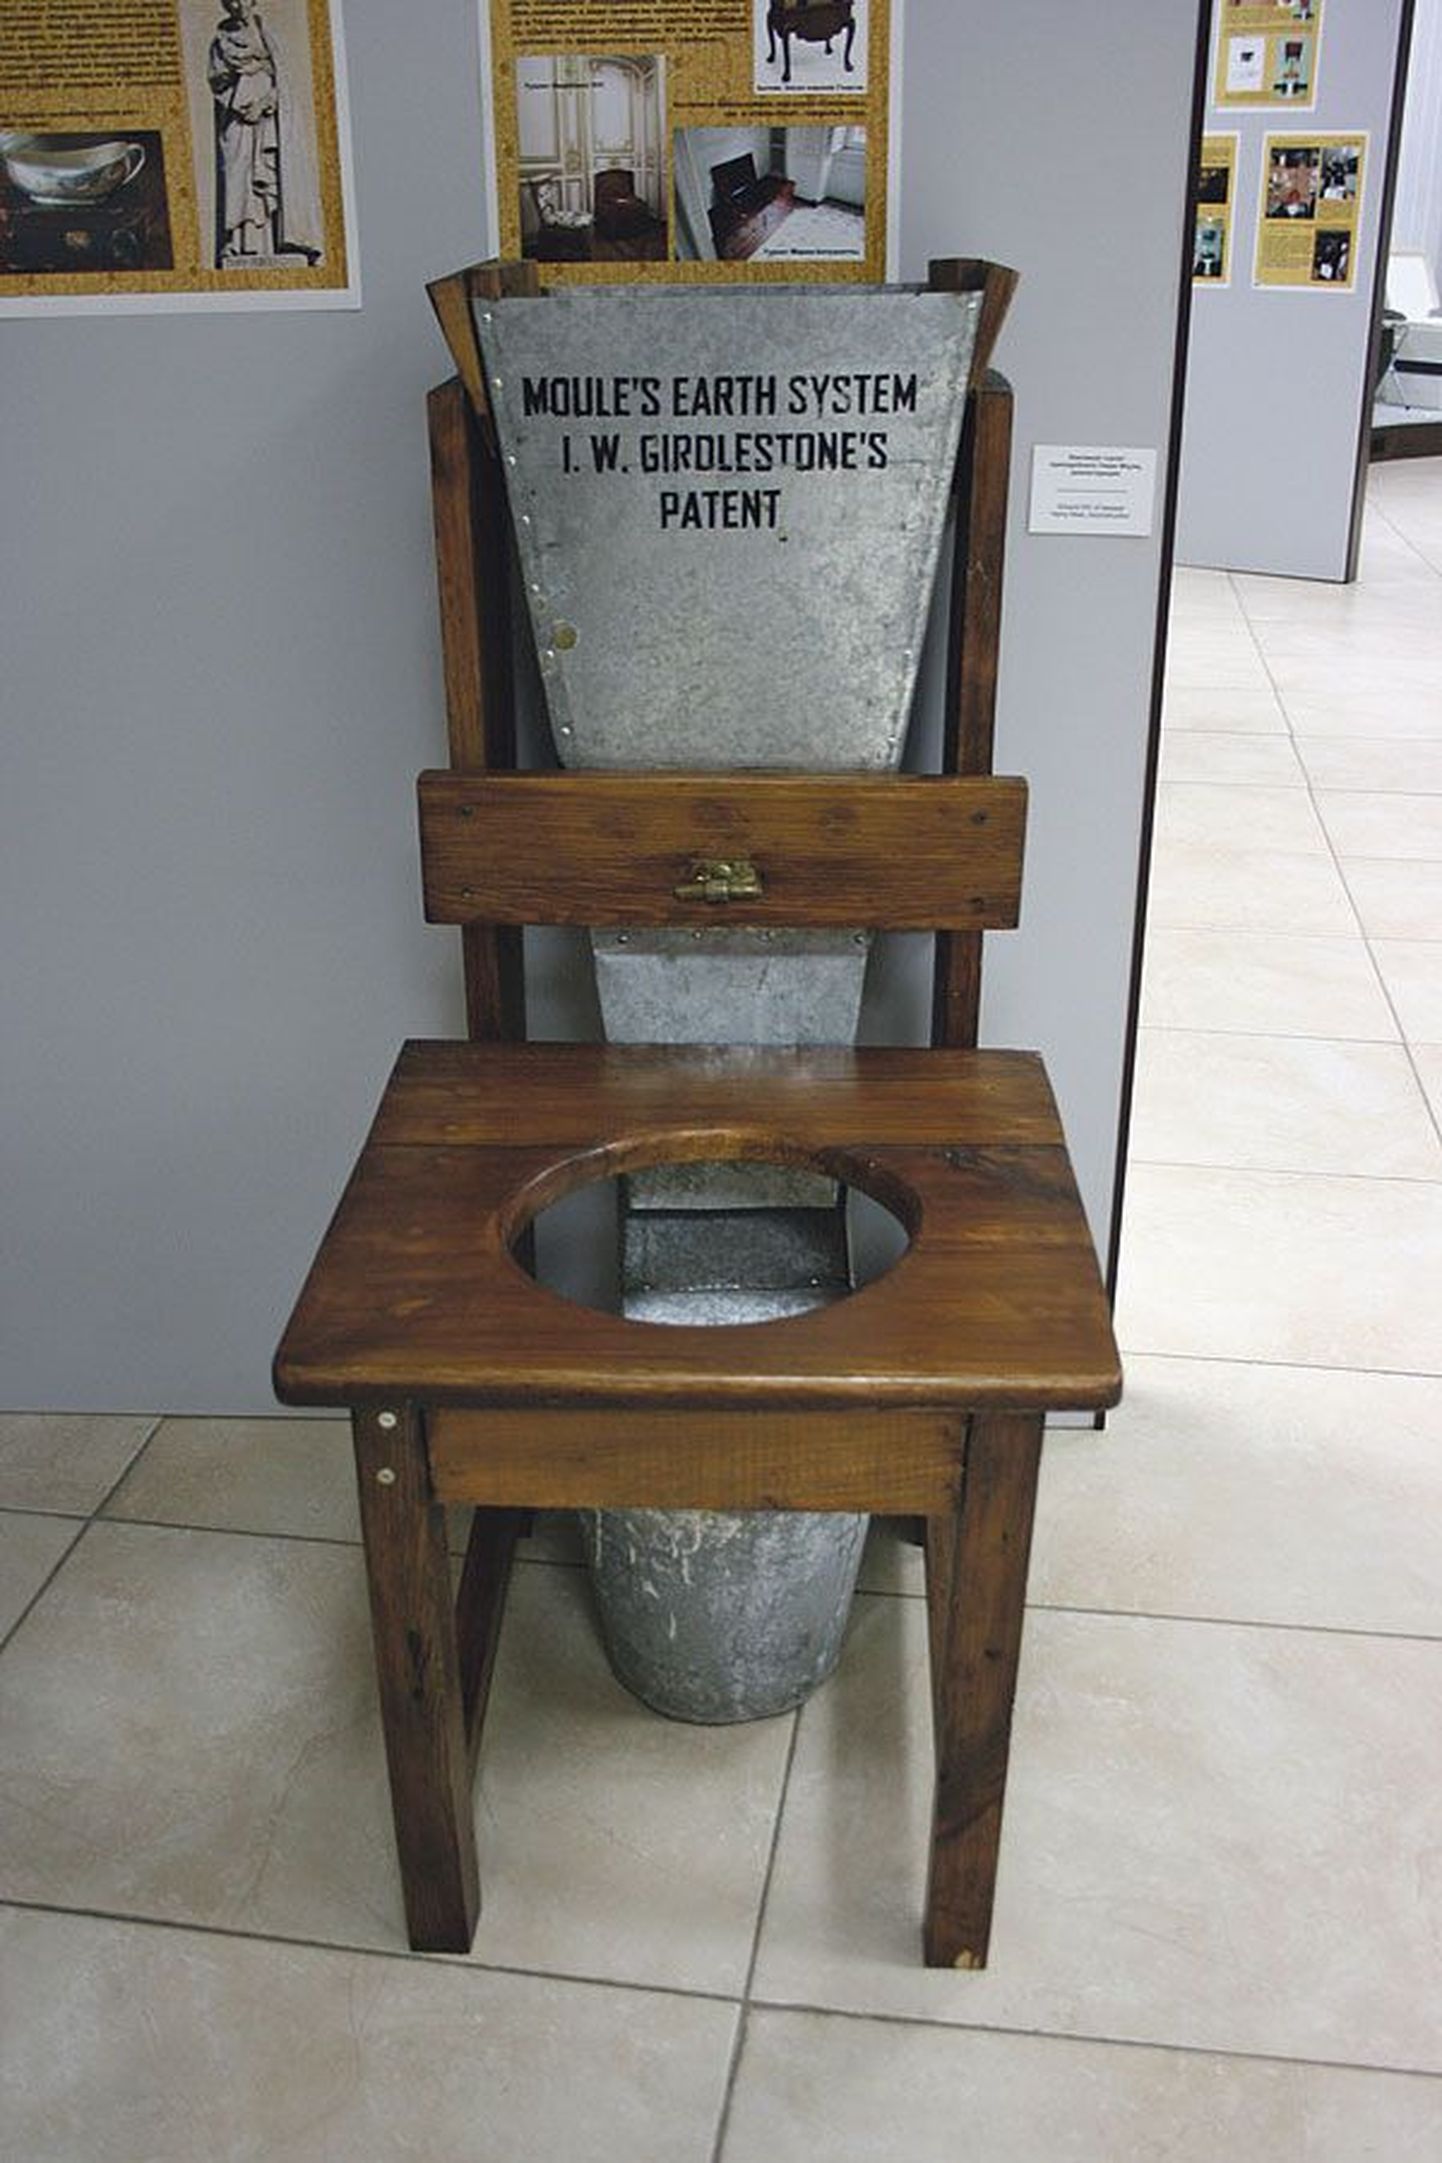 В 1873 году Генри Моул изобрел деревянный стул с отверстием для ведра. К спинке стула крепилась наполненная торфом емкость с ручной заслонкой. Это изобретение стало первым шагом на пути создания современных биотуалетов.